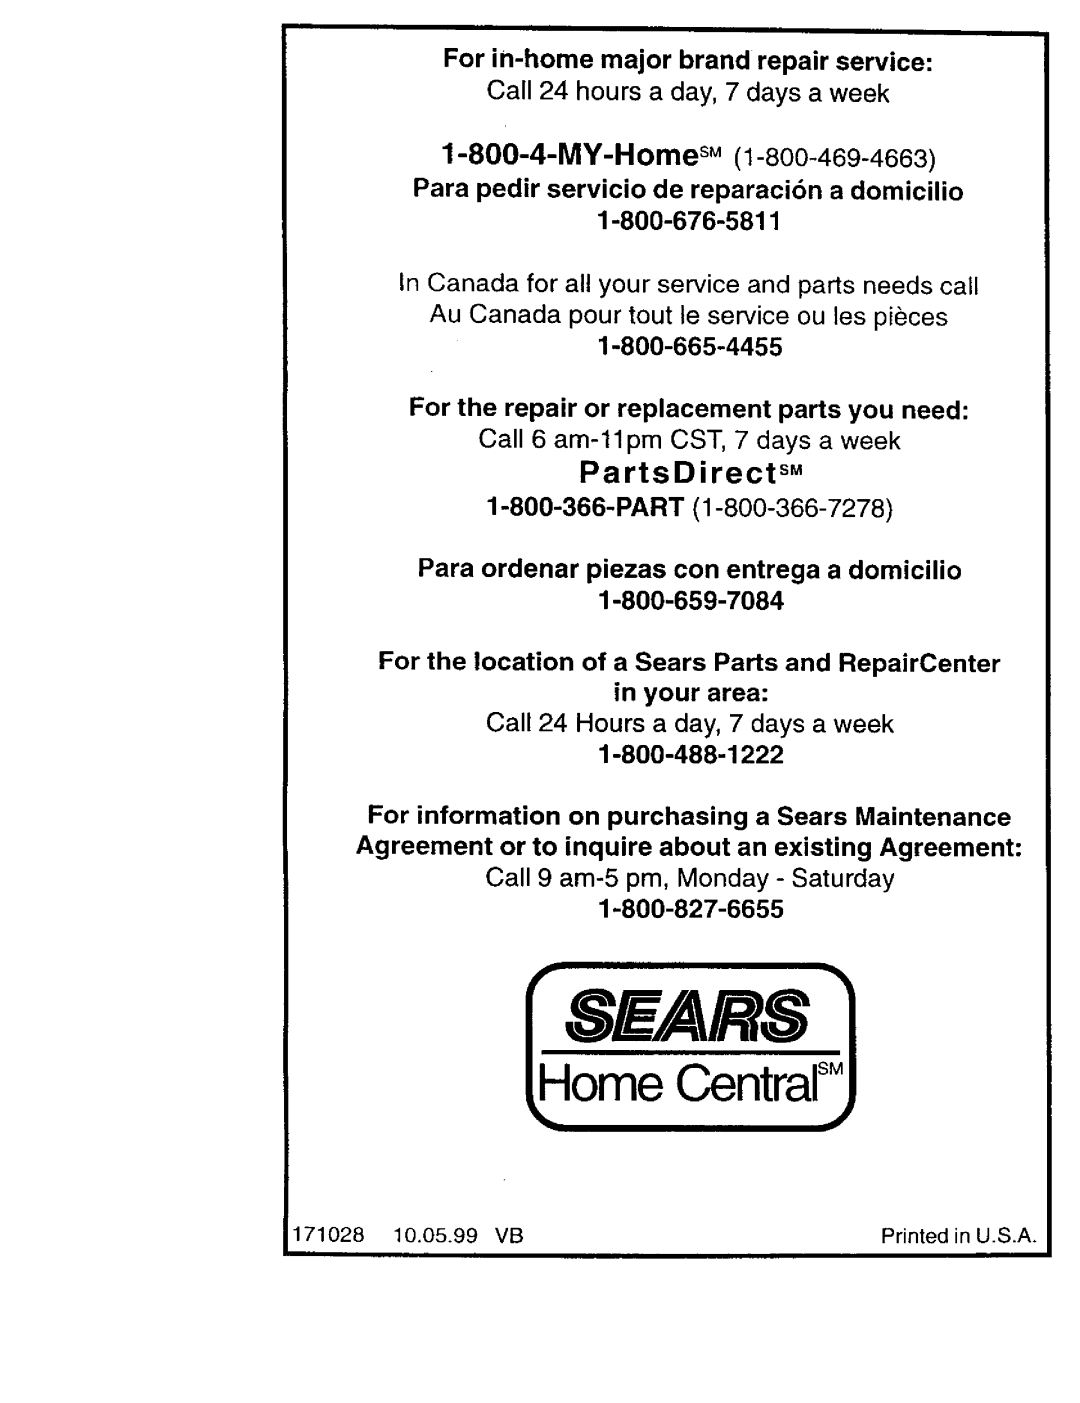 Craftsman 917.377544 owner manual PartsDirect sM, Sears, Home CentralSM, Para pedir servicio de reparacibn a domicilio 